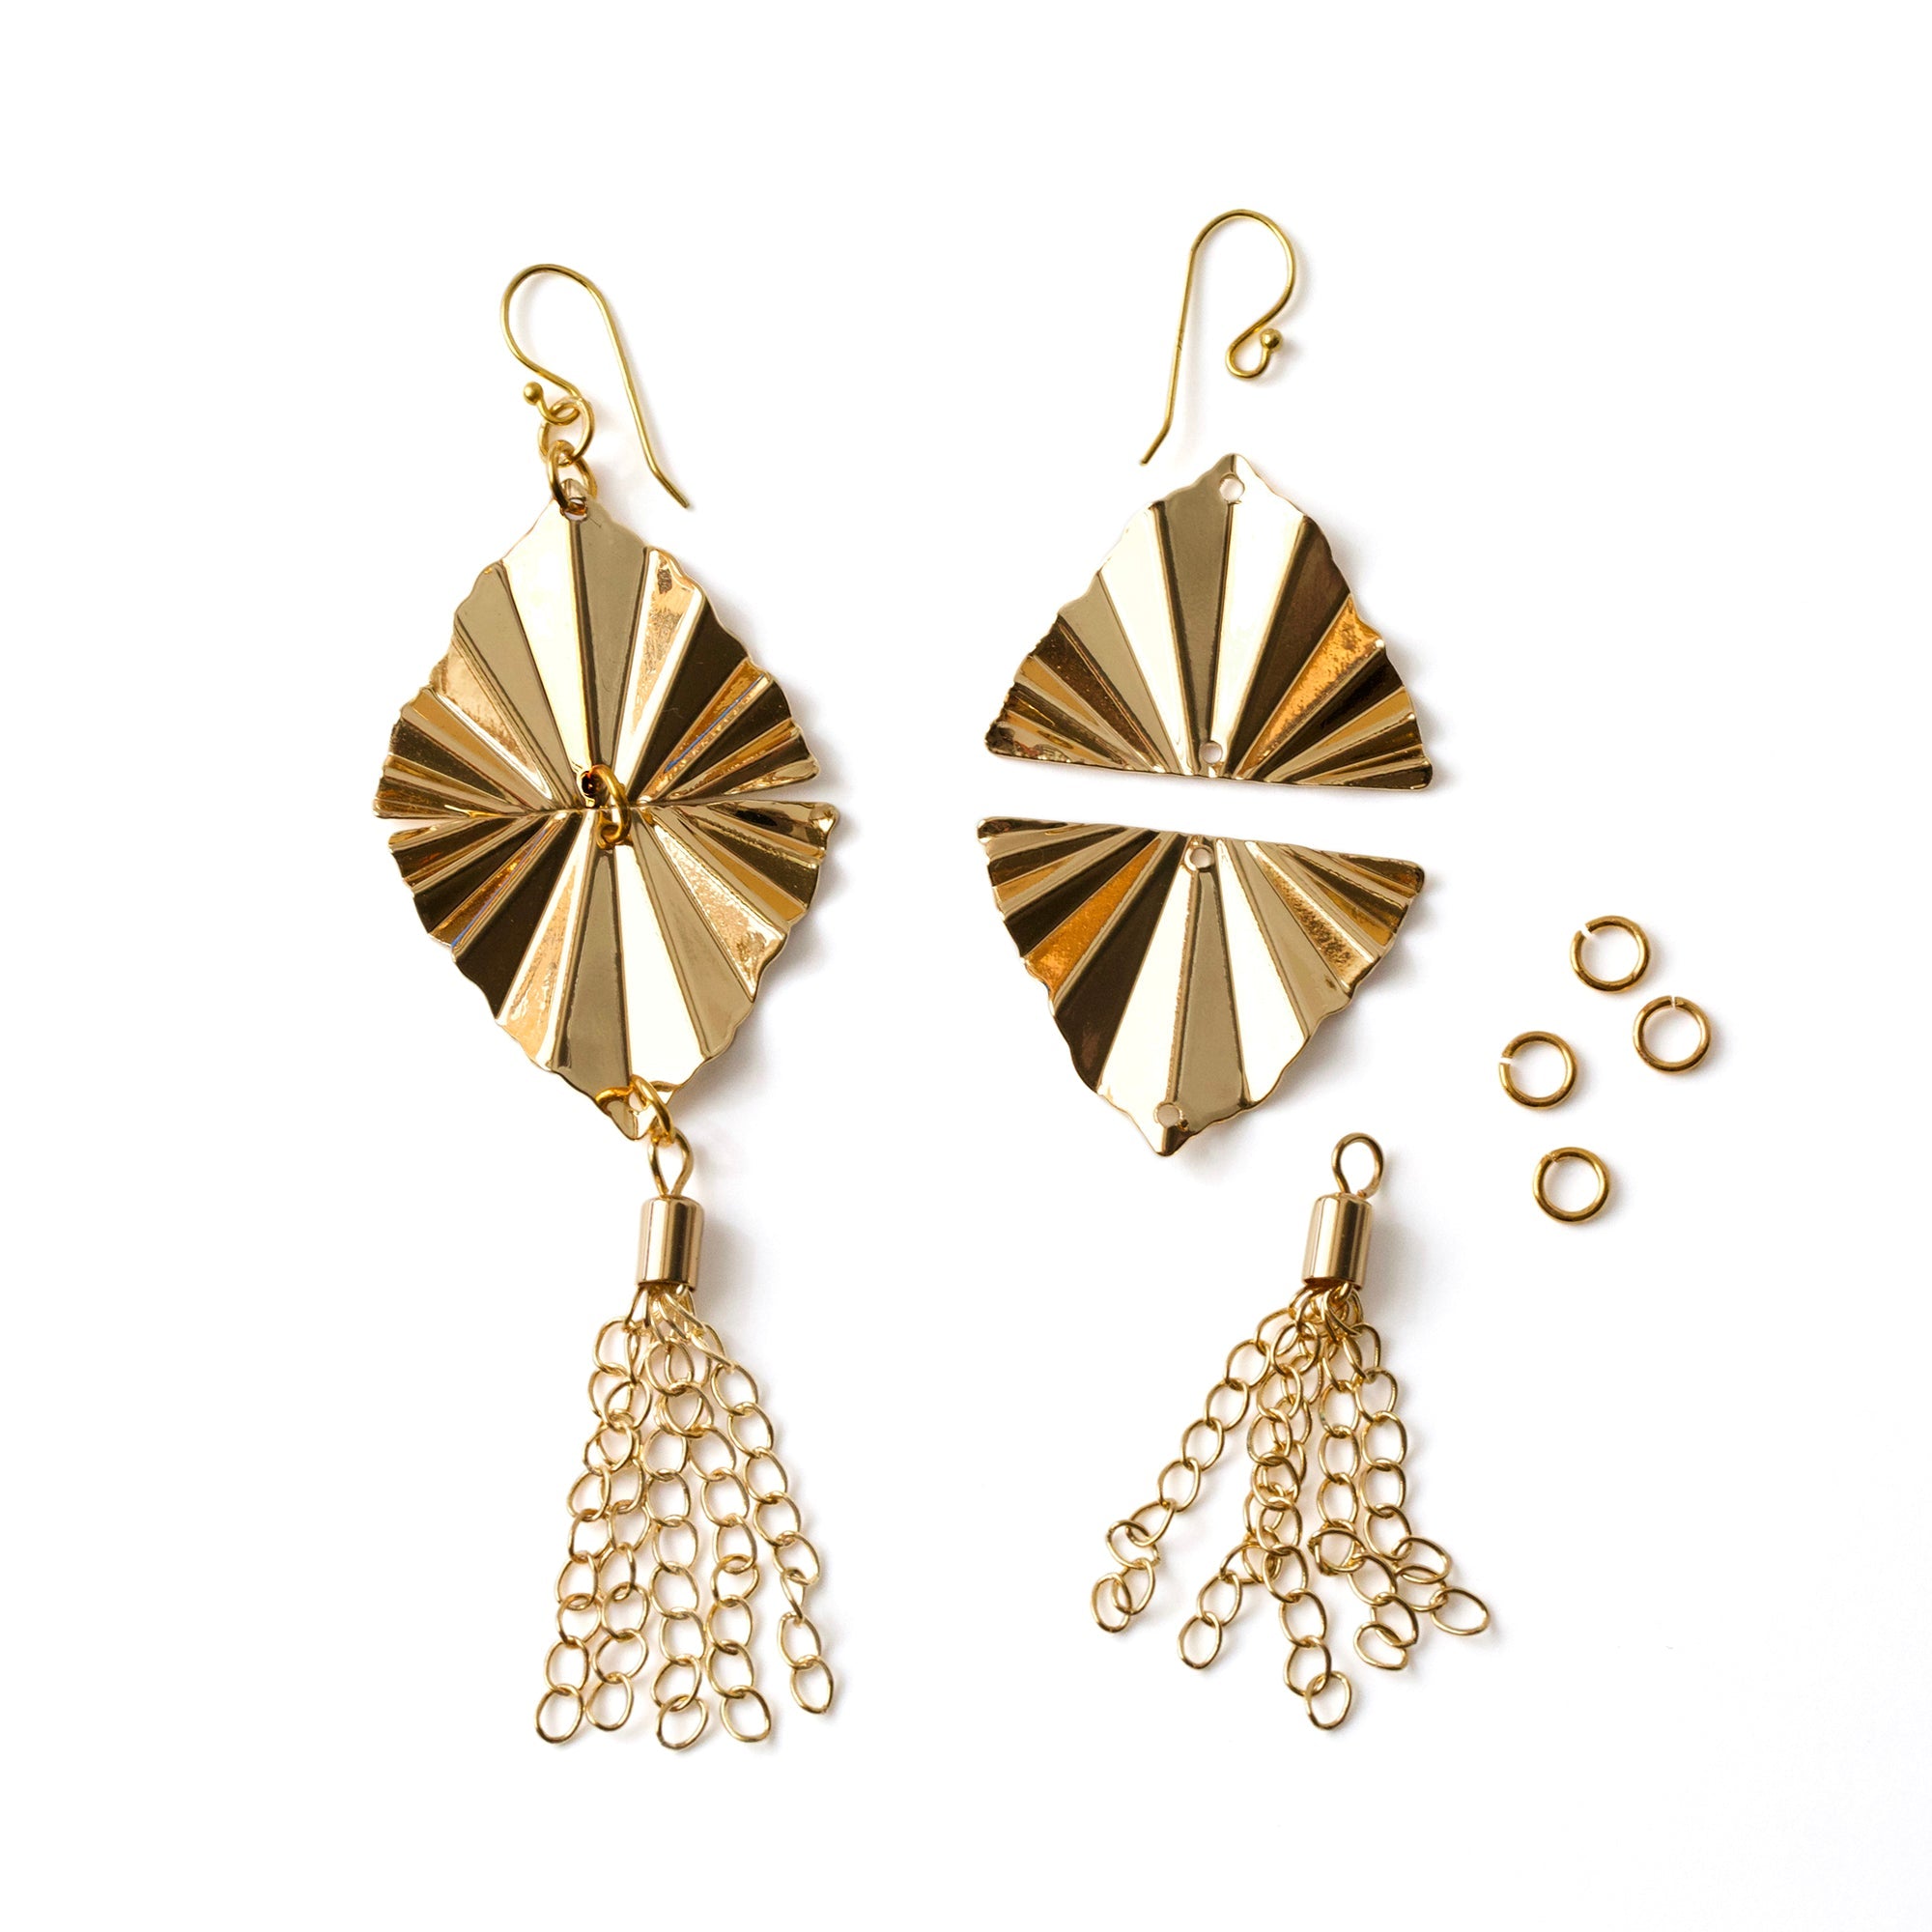 INSTRUCTIONS for DIY Art Deco Fan Earrings - Gold